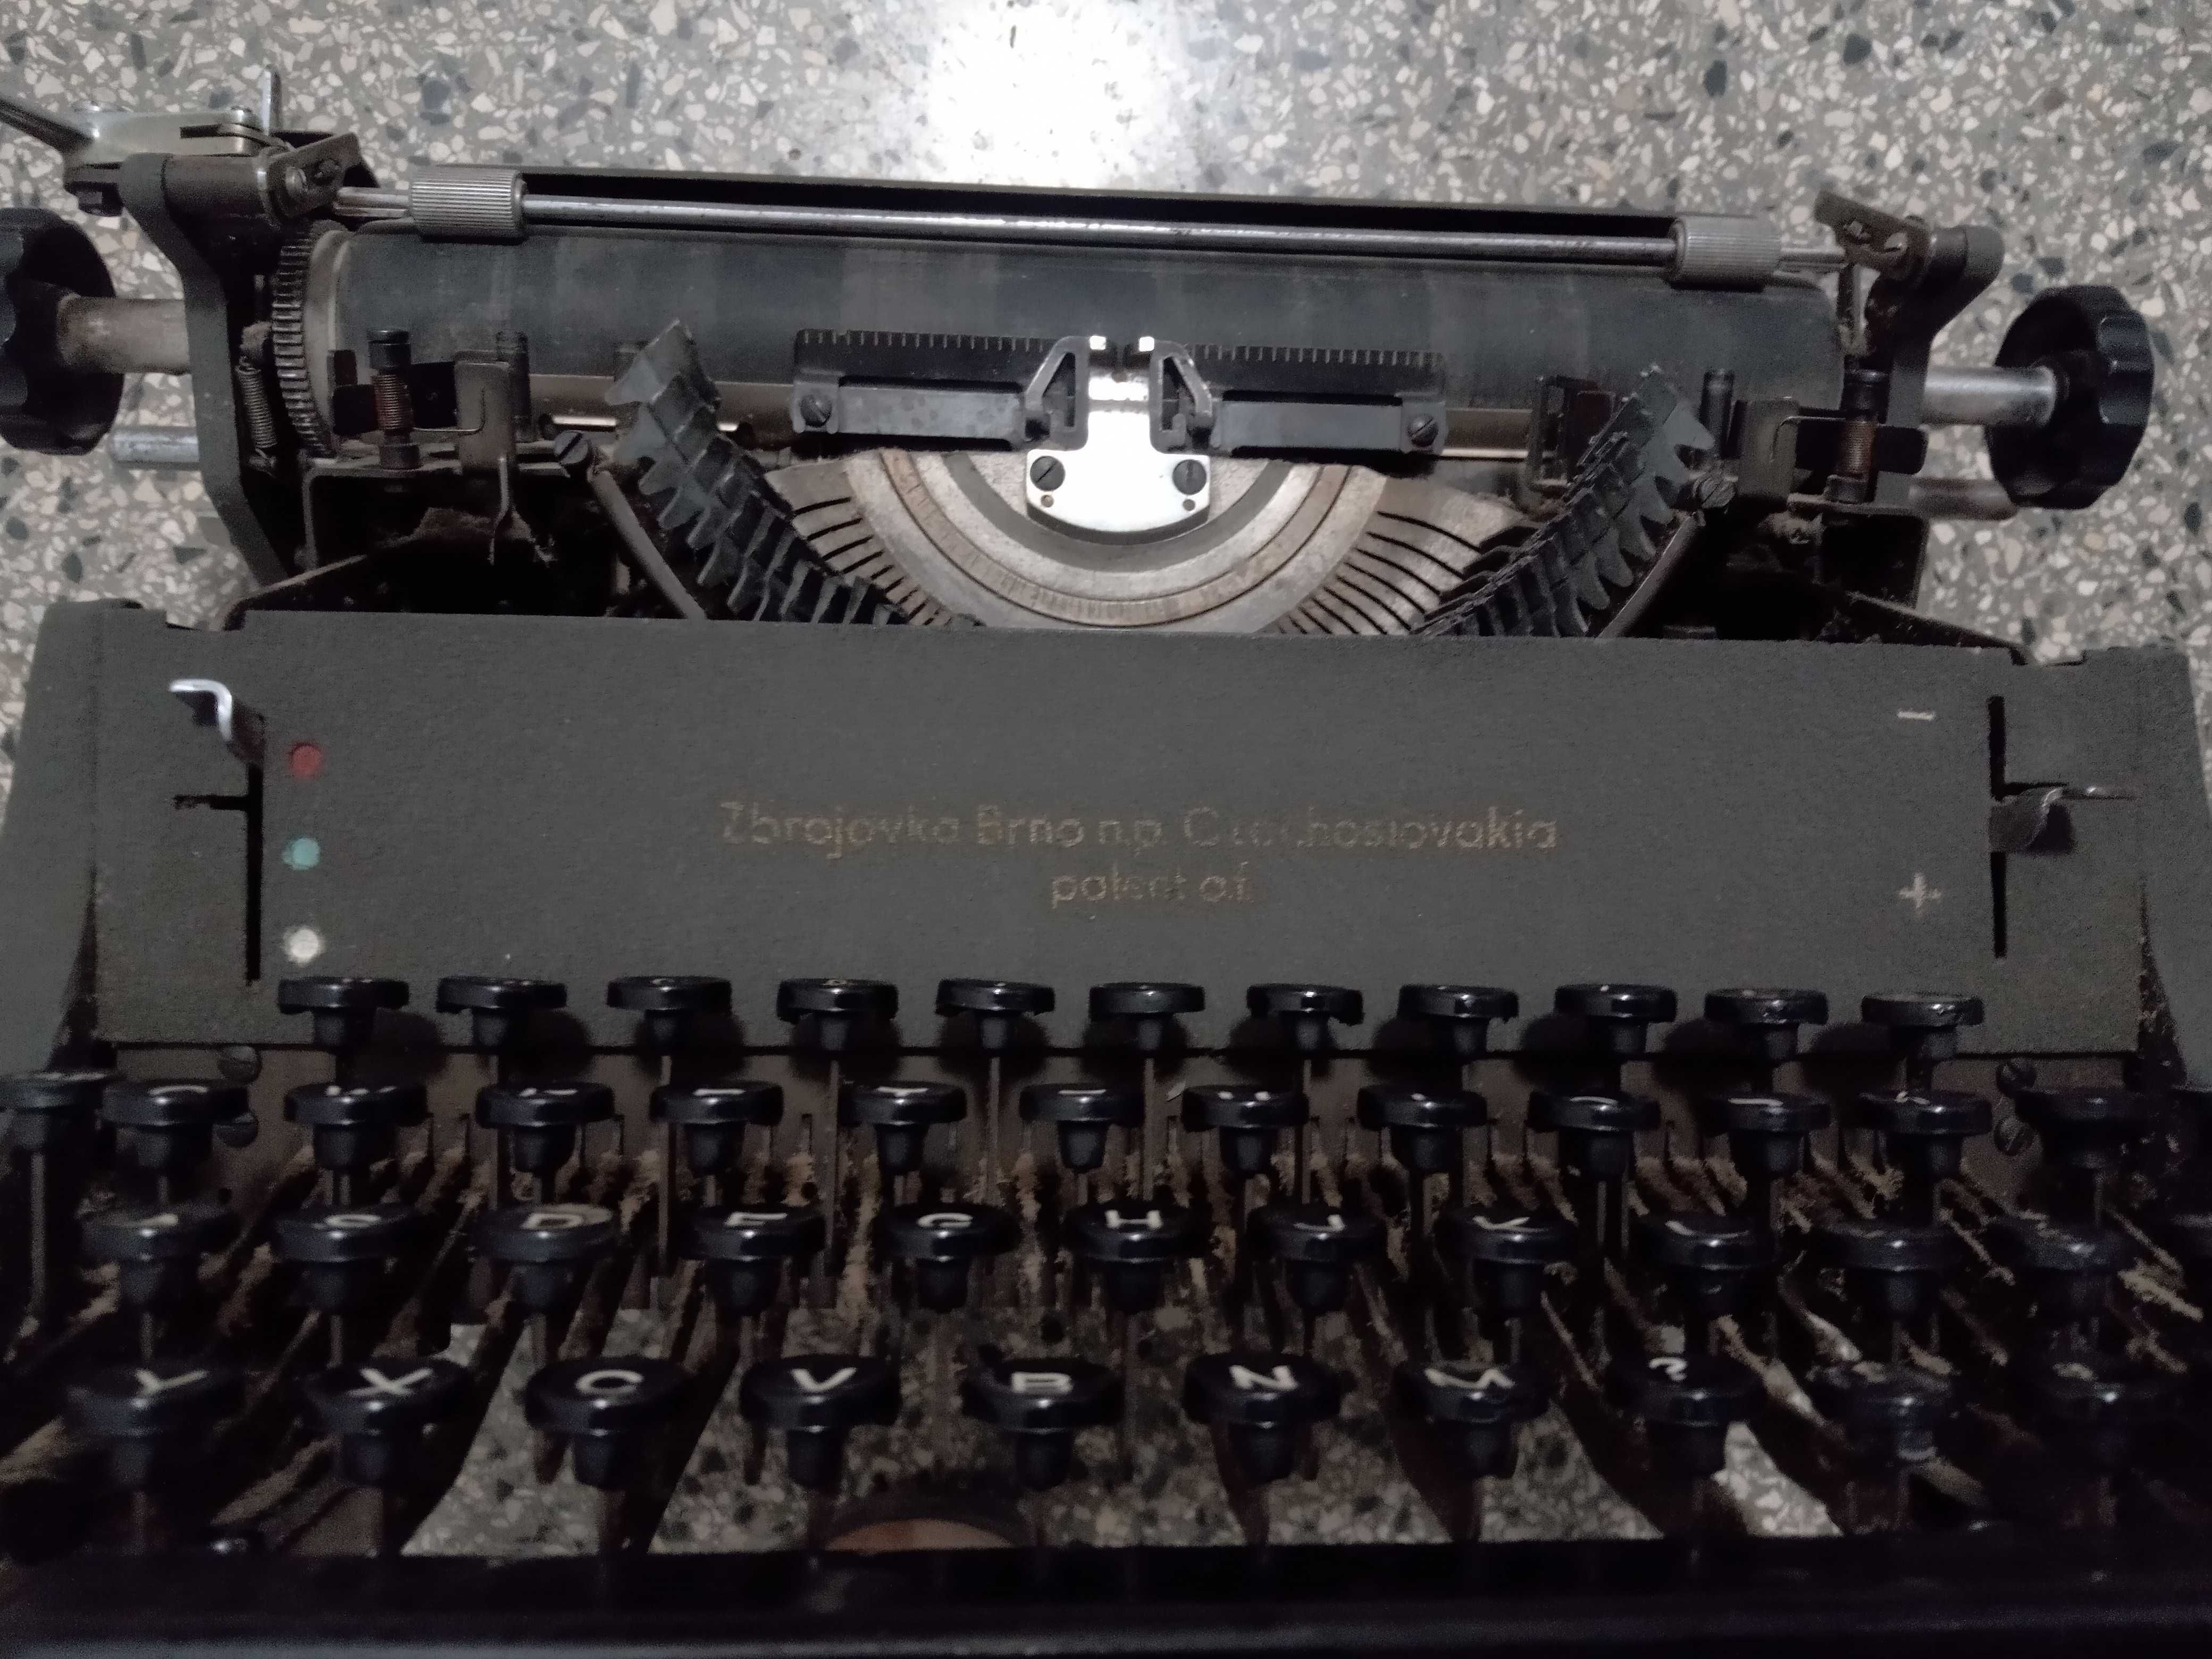 Zbrojovka Brno, Czechosłowacja Kolekcjonerska maszyna do pisania